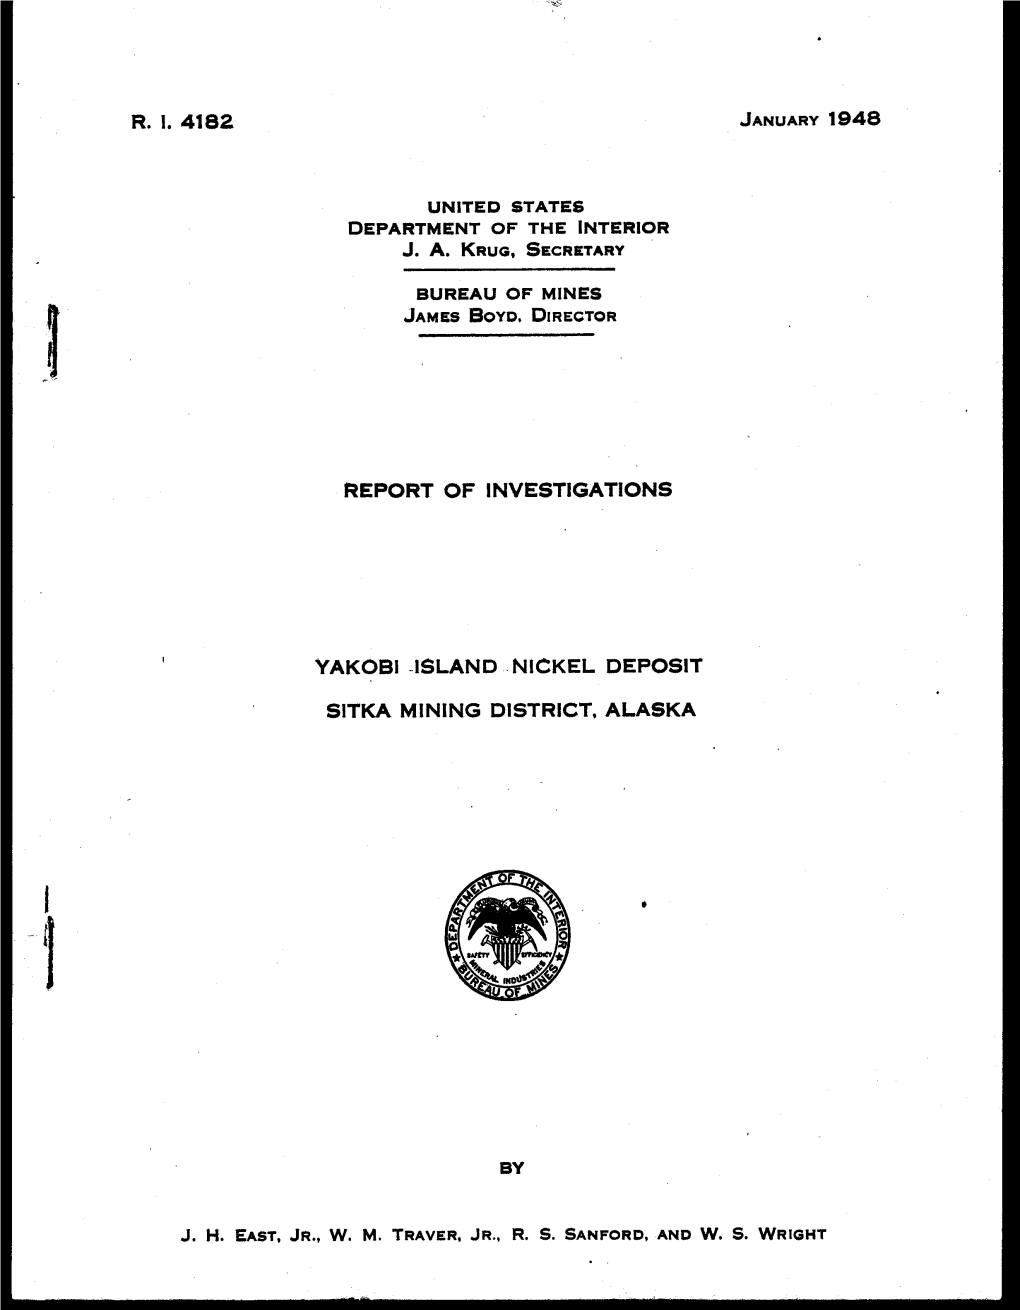 R. I. 4182 Report of Investigations Yakobi Island